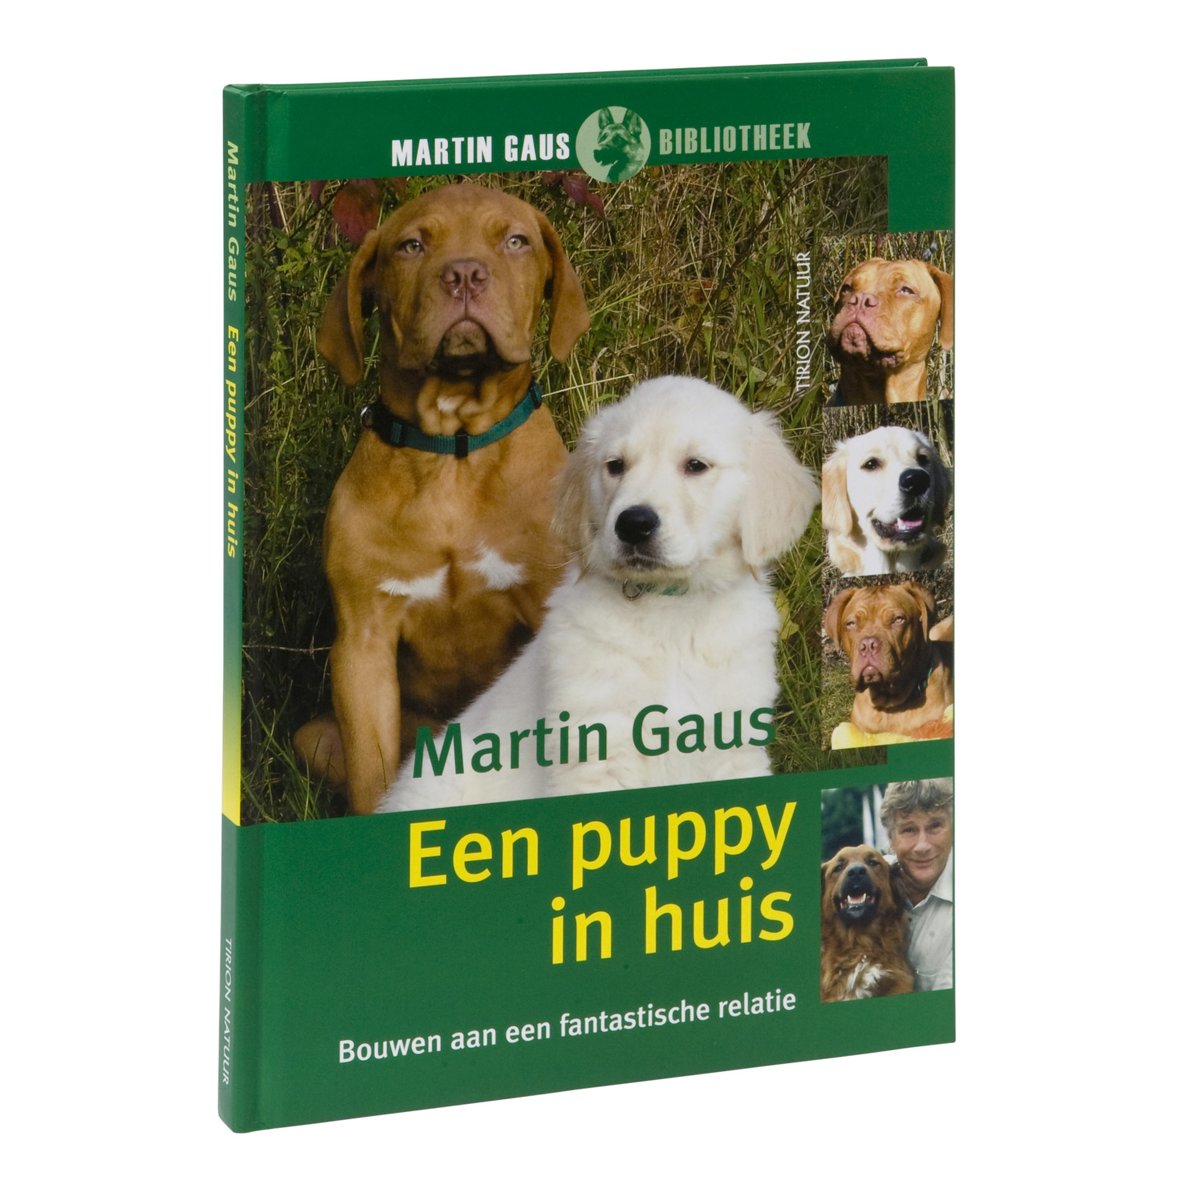 Martin Gaus Bibliotheek - Een puppy in huis